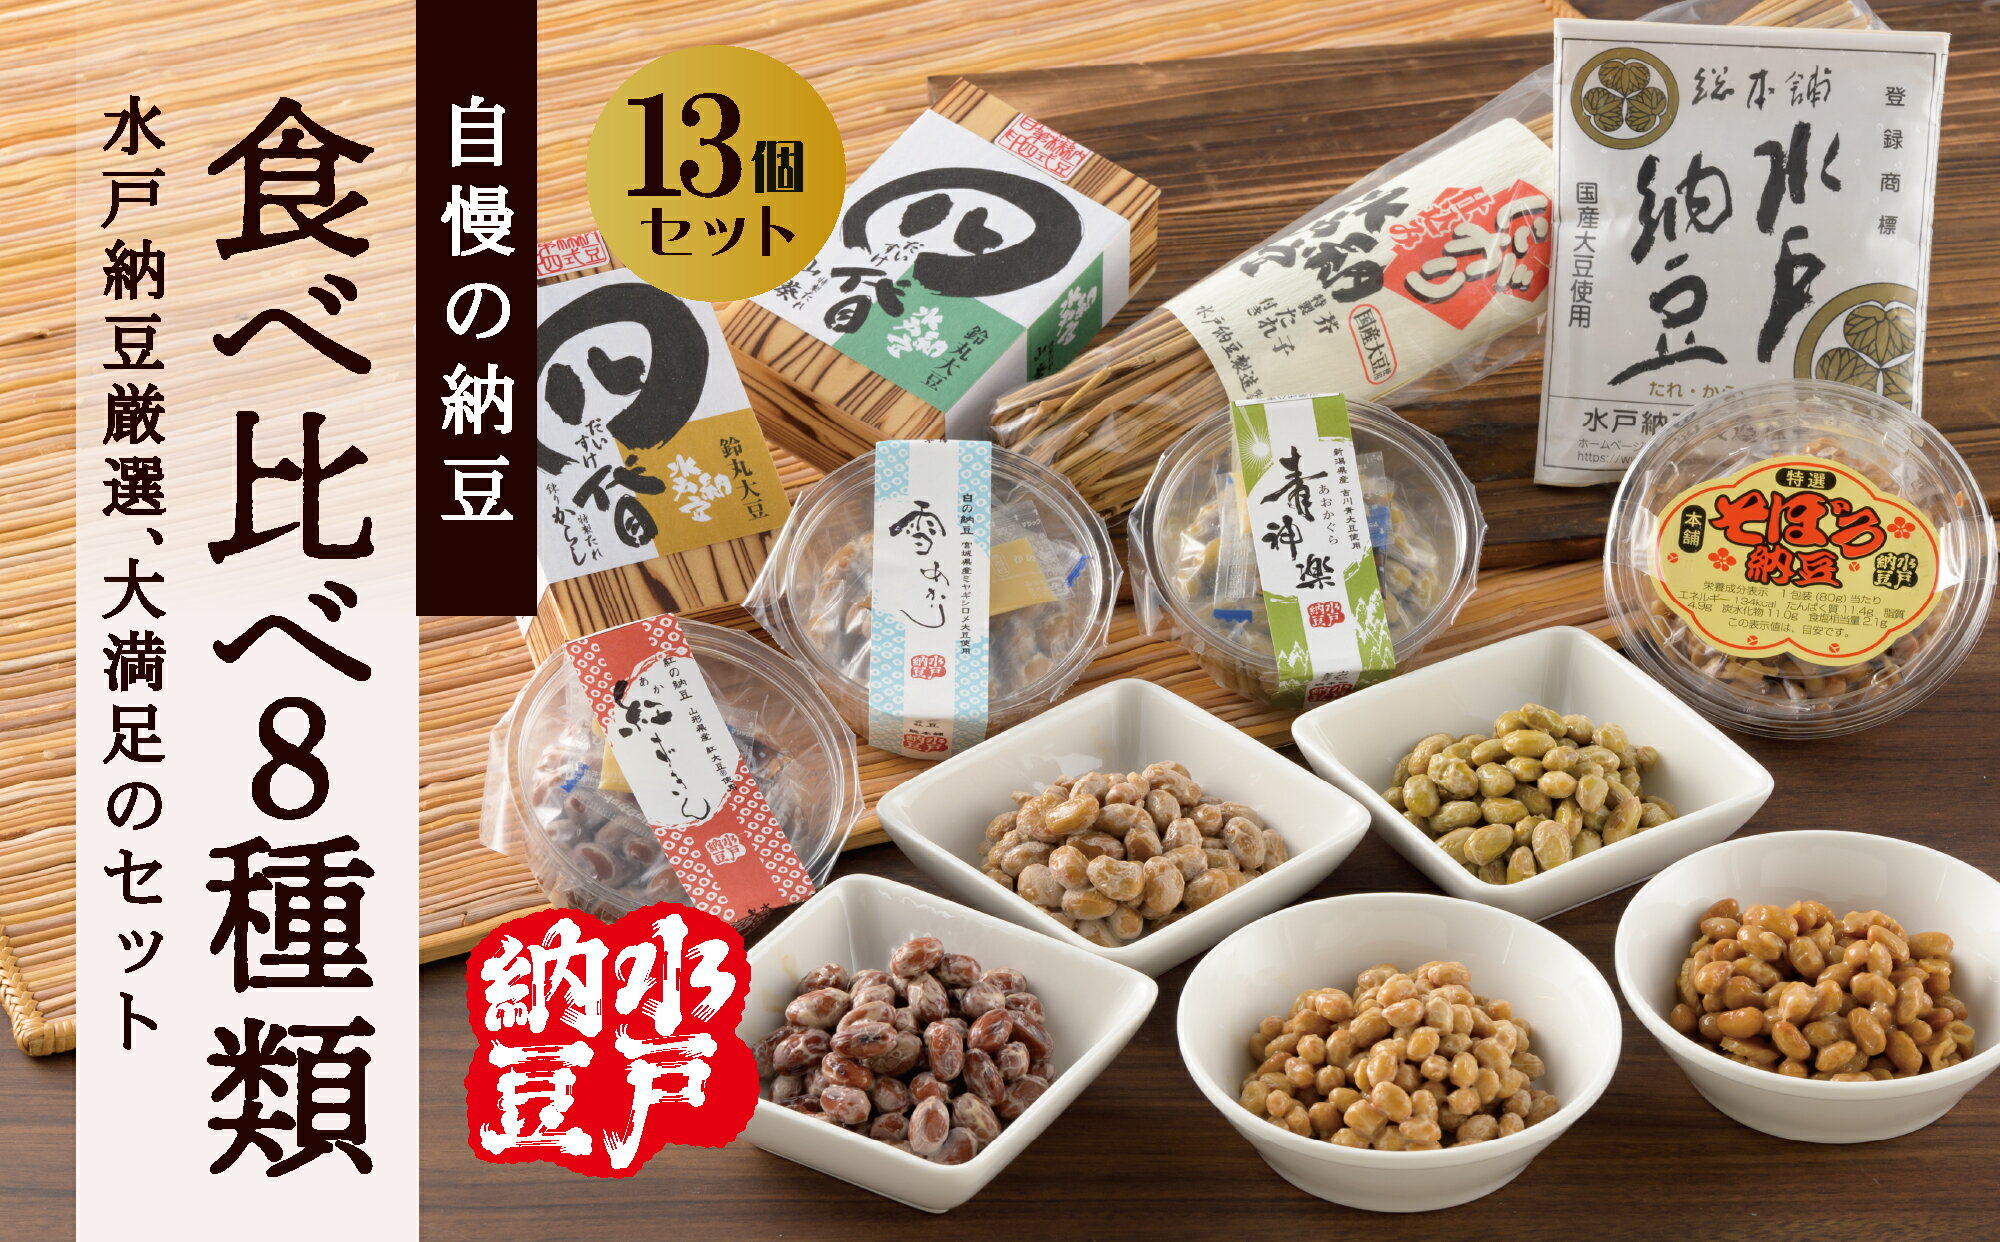 [水戸納豆]厳選!自慢の納豆食べ比べ8種類大満足セット(DL-10)